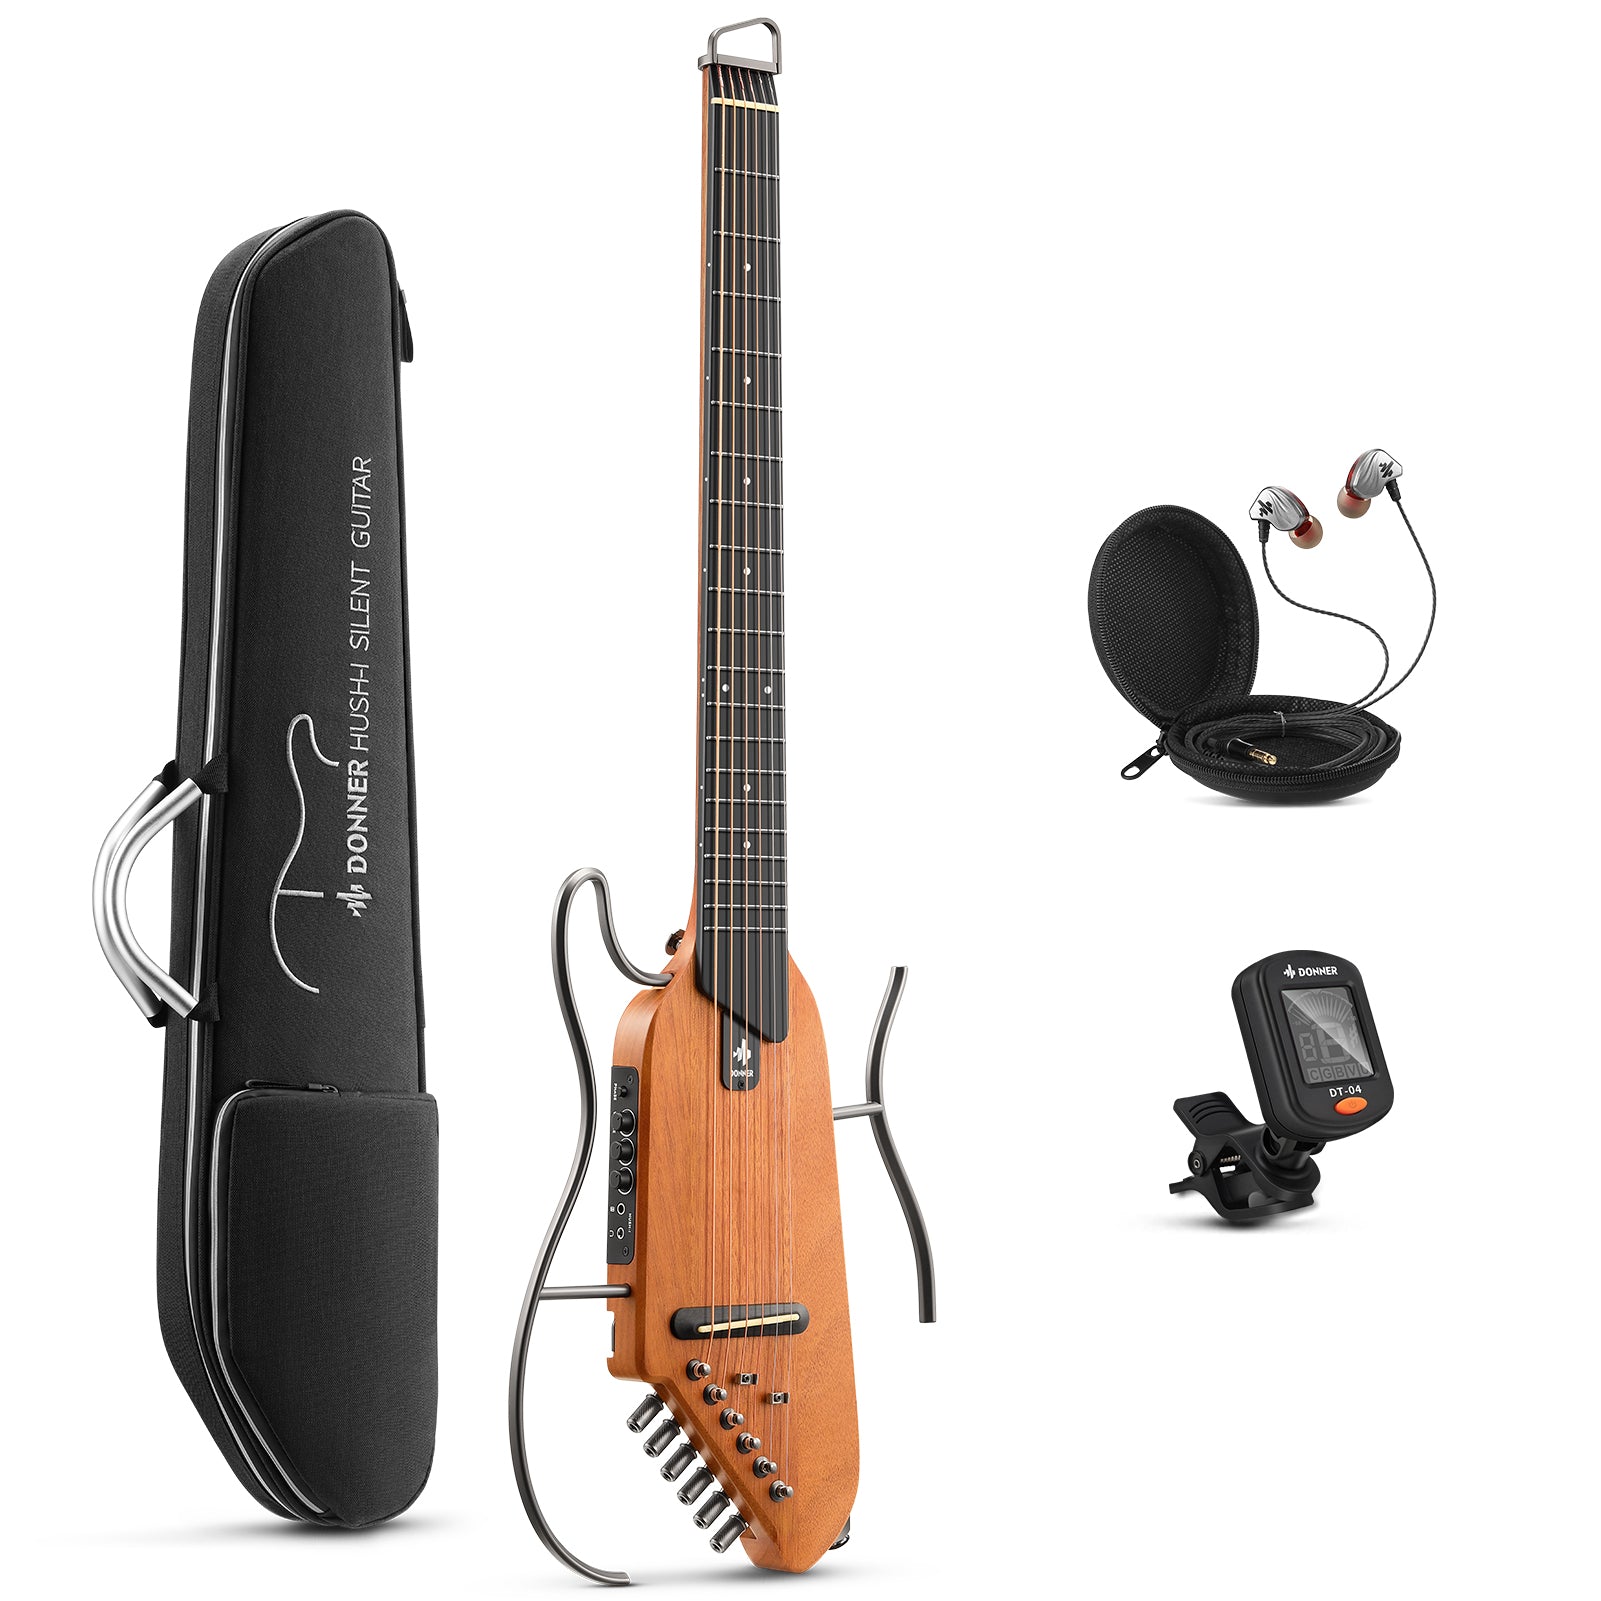 Donner HUSH-I Silent Acoustic Guitar Kit for Travel